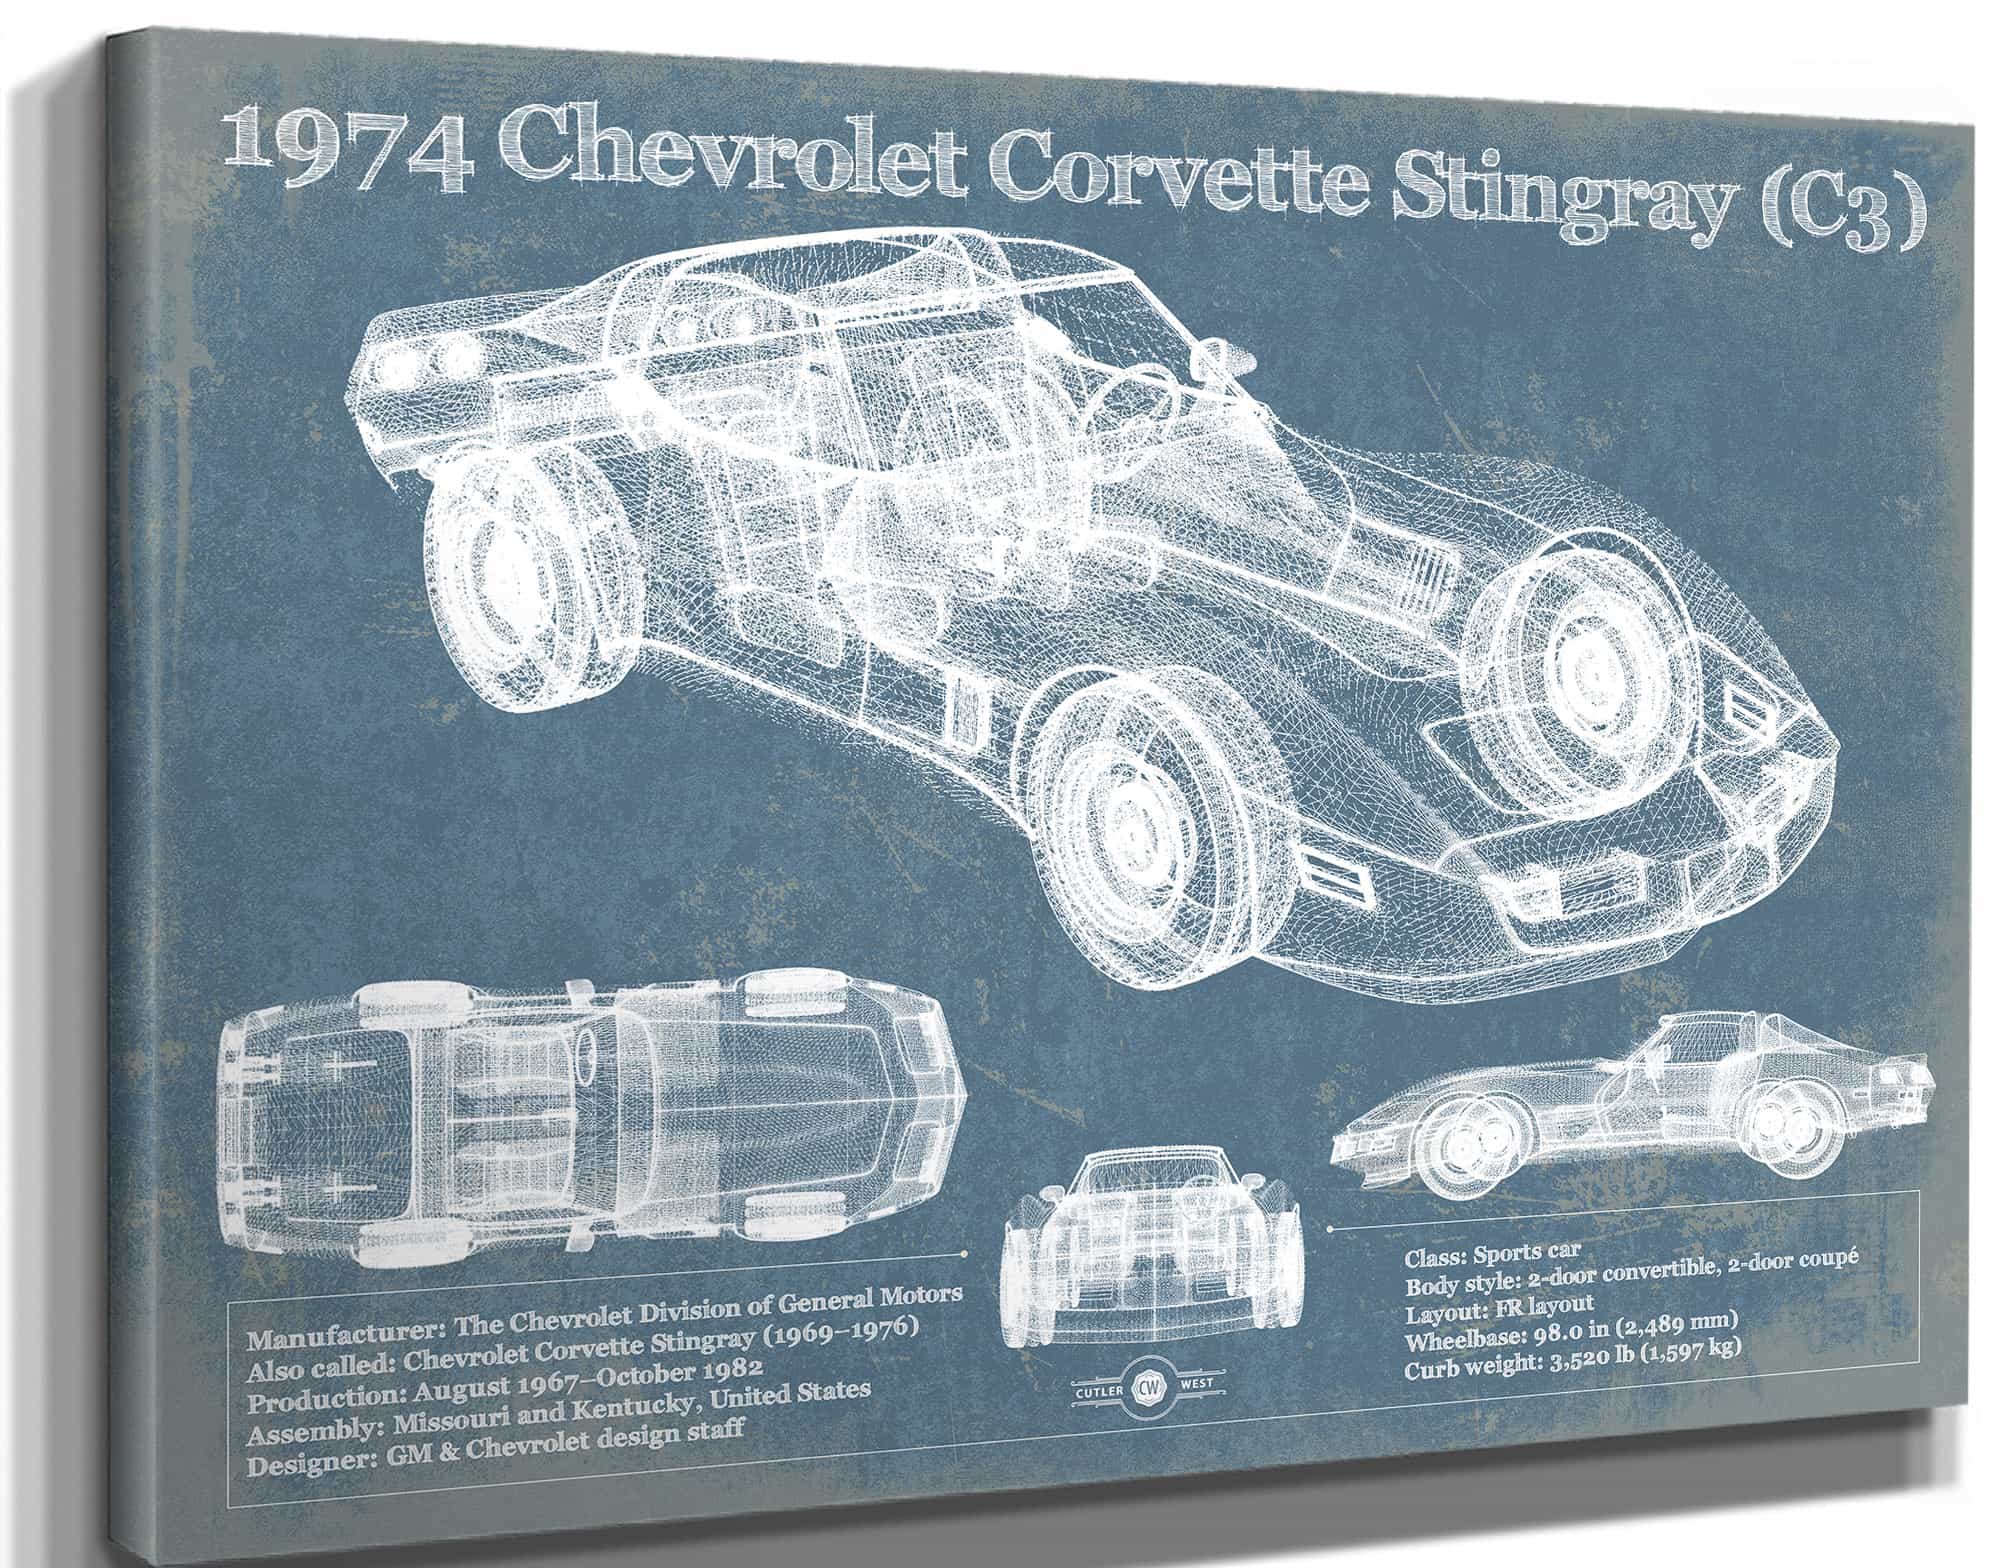 1974 Chevrolet Corvette Stingray (C3) Coupe Vintage Blueprint Auto Print